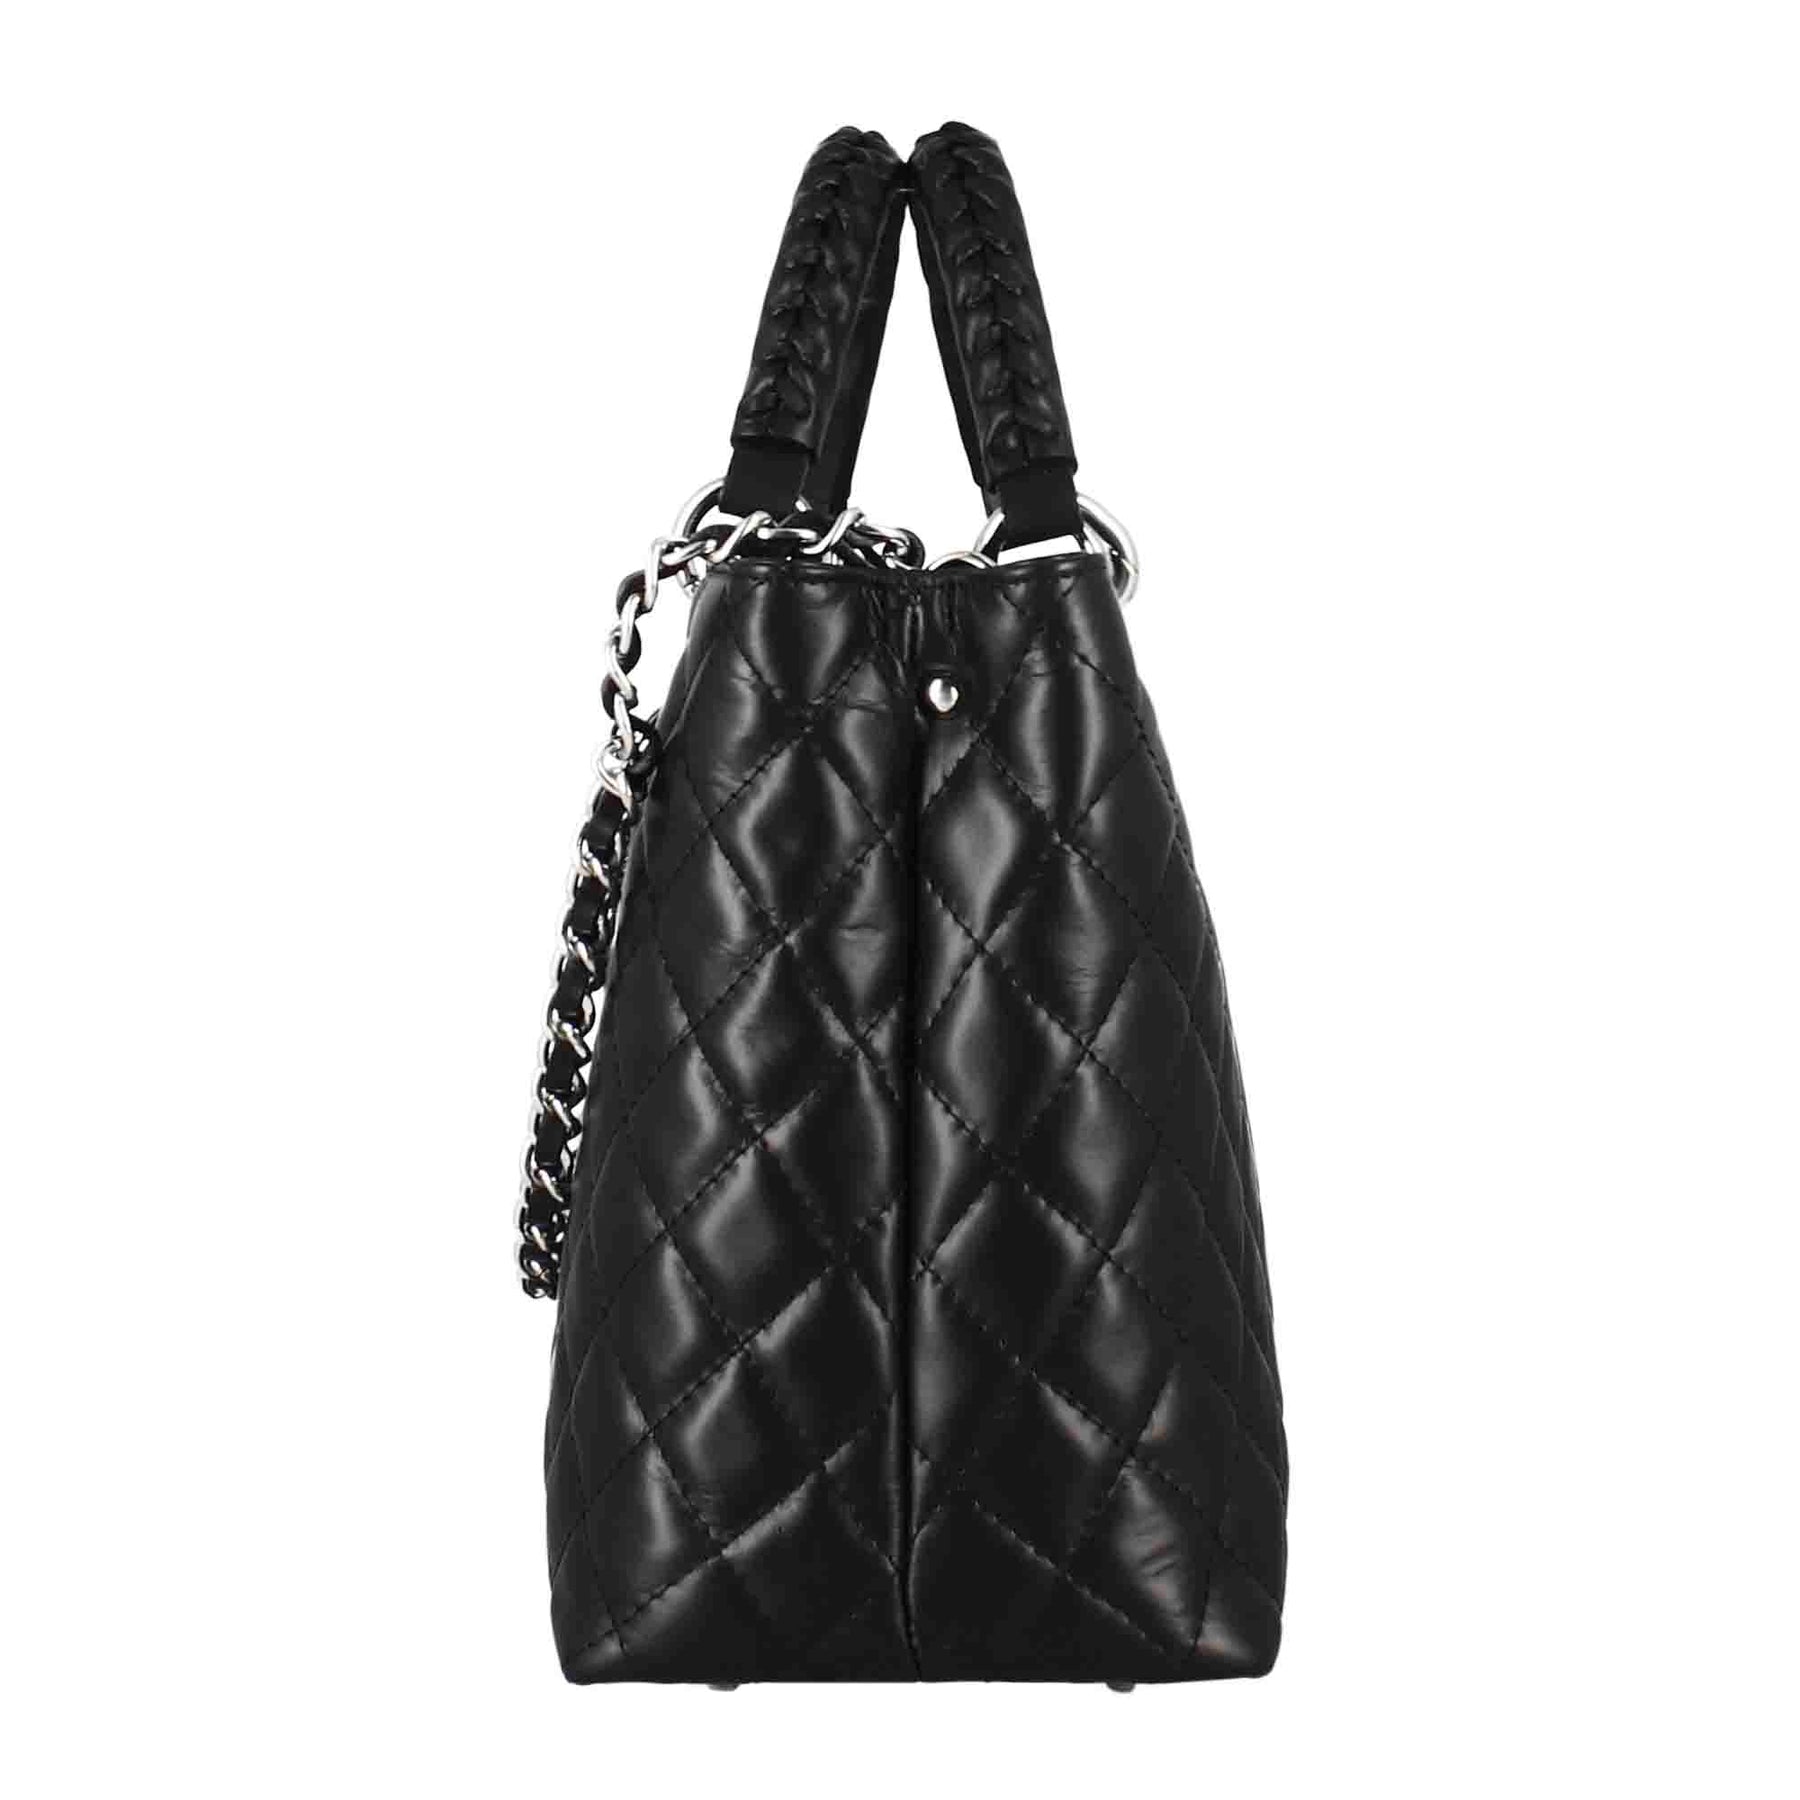 Vanity shopper bag with black quilted leather shoulder strap